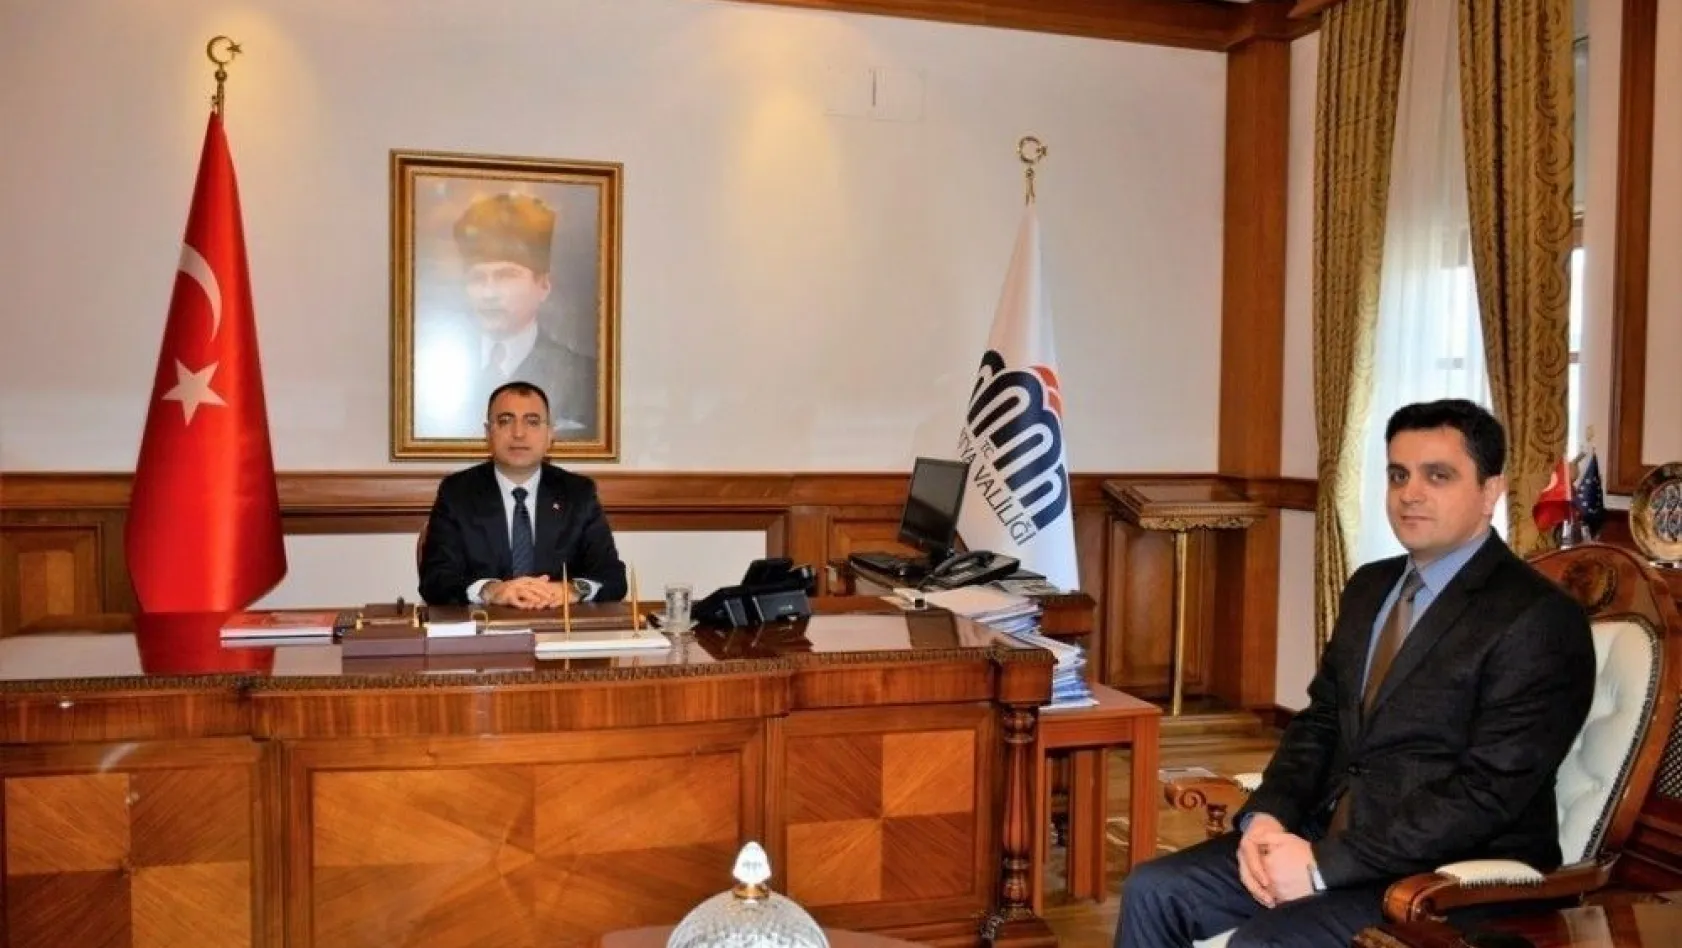 DHMİ Malatya Havalimanı yeni müdürü Aladağ, Vali Toprak'ı ziyaret etti
